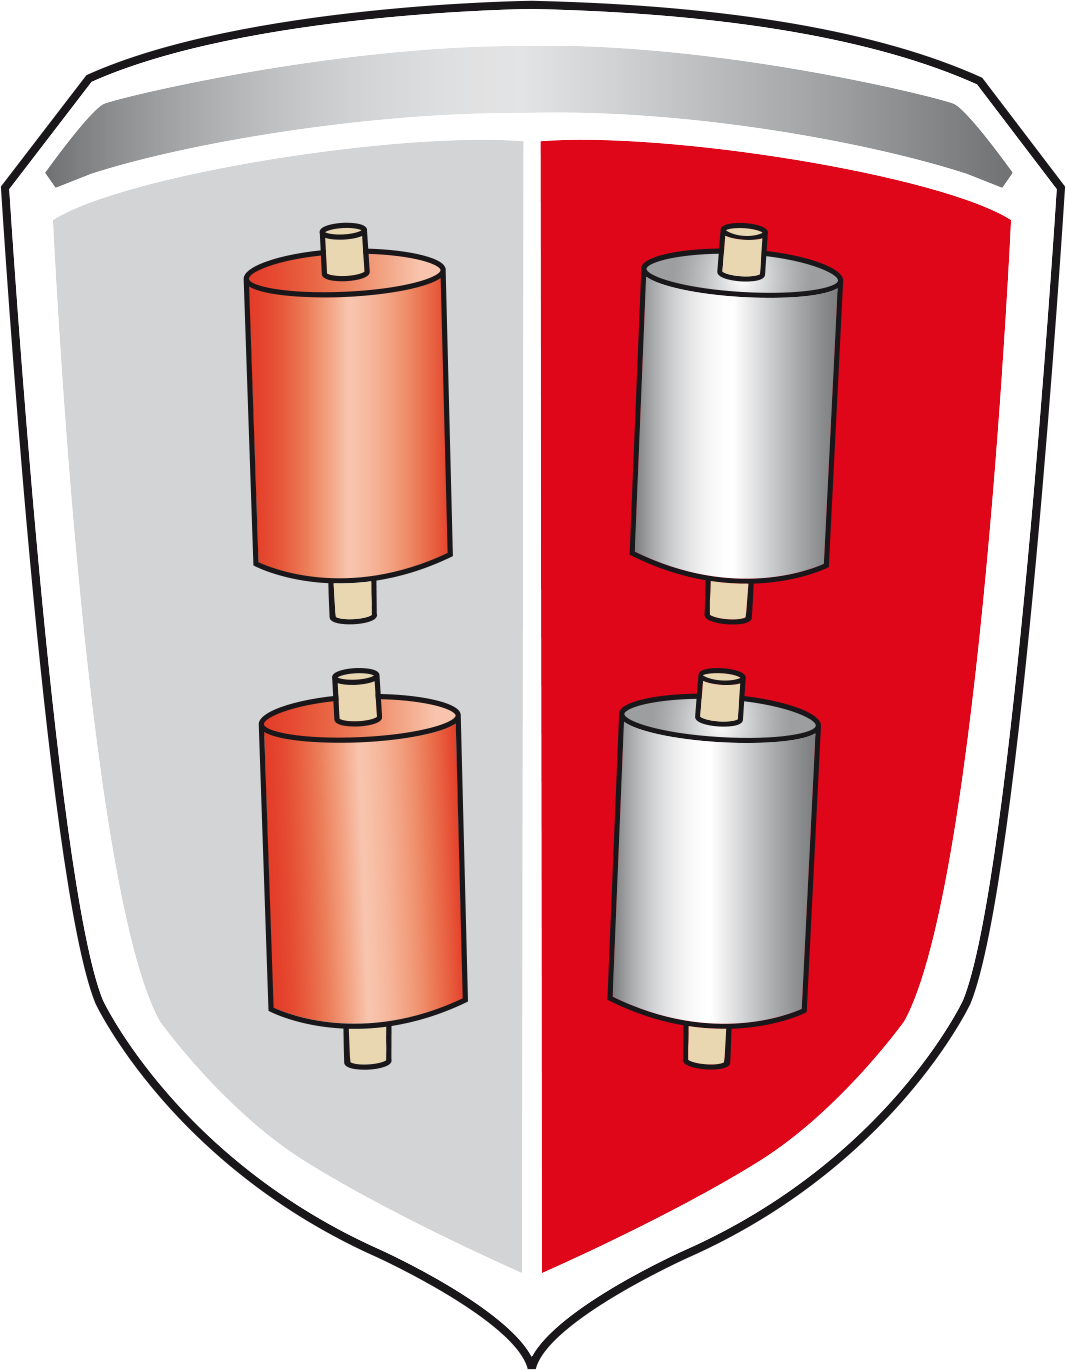 Wappen des Marktes Bechhofen an der Heide